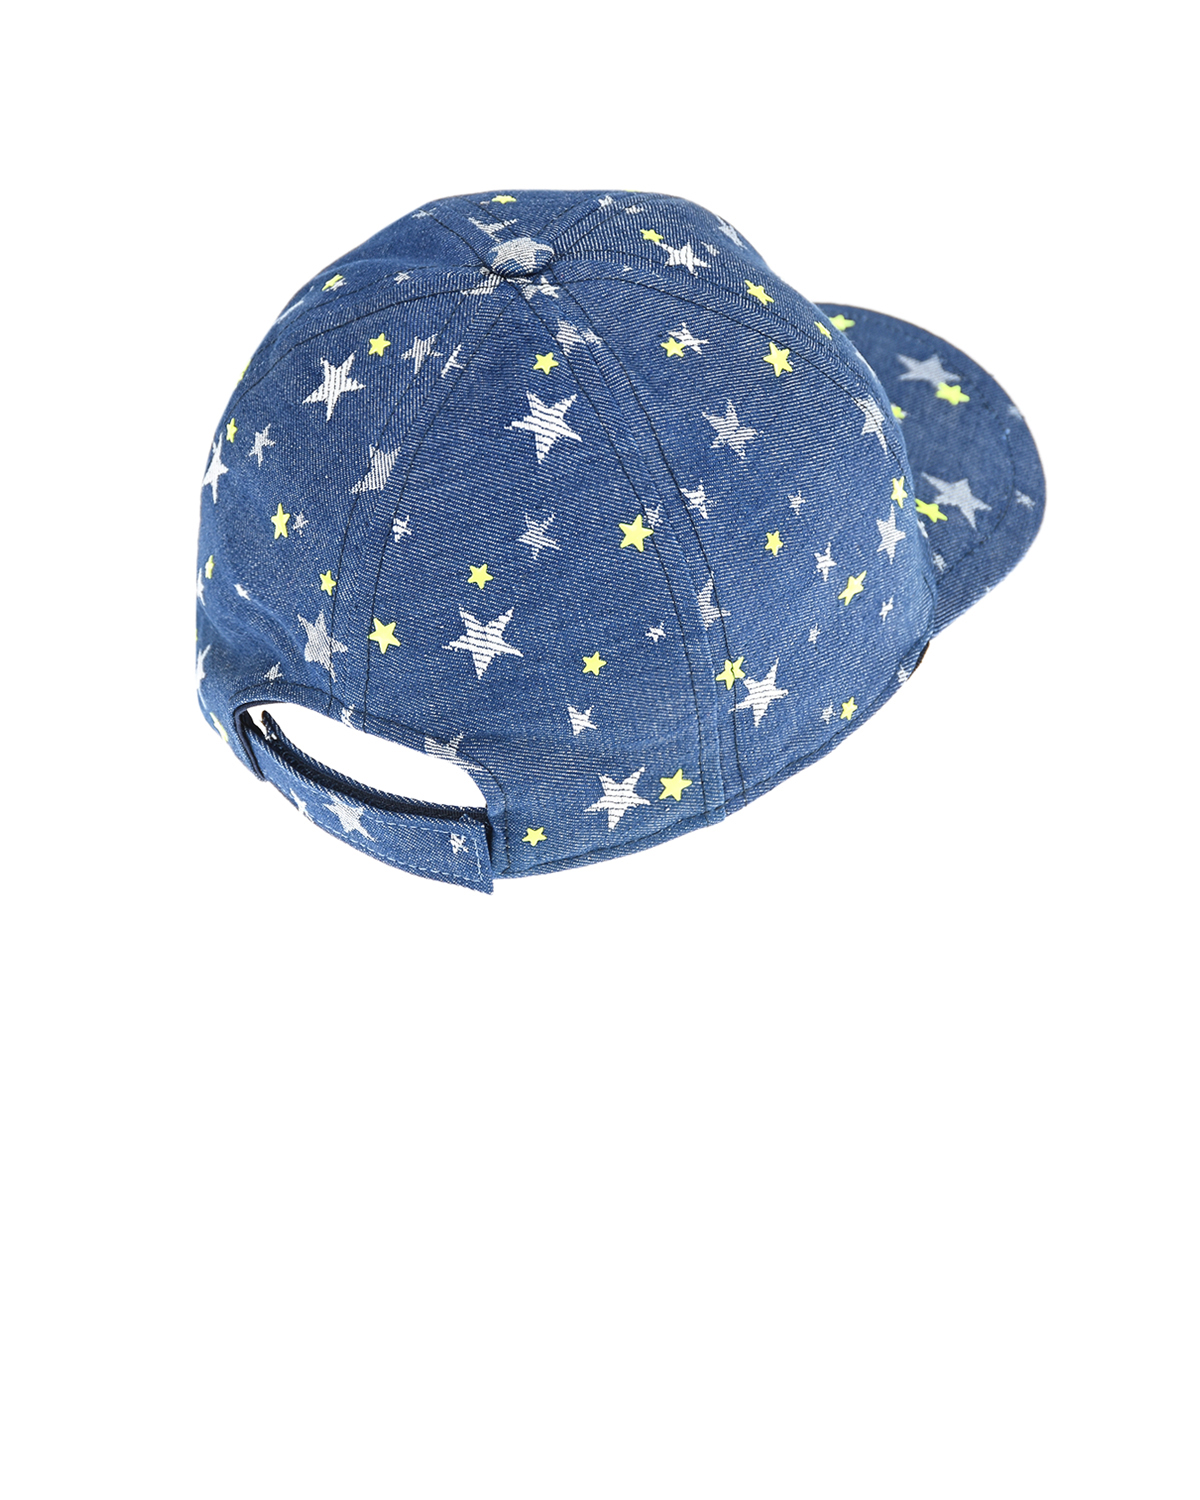 Джинсовая кепка с принтом "Звезды" Il Trenino детская, размер 52, цвет синий - фото 2